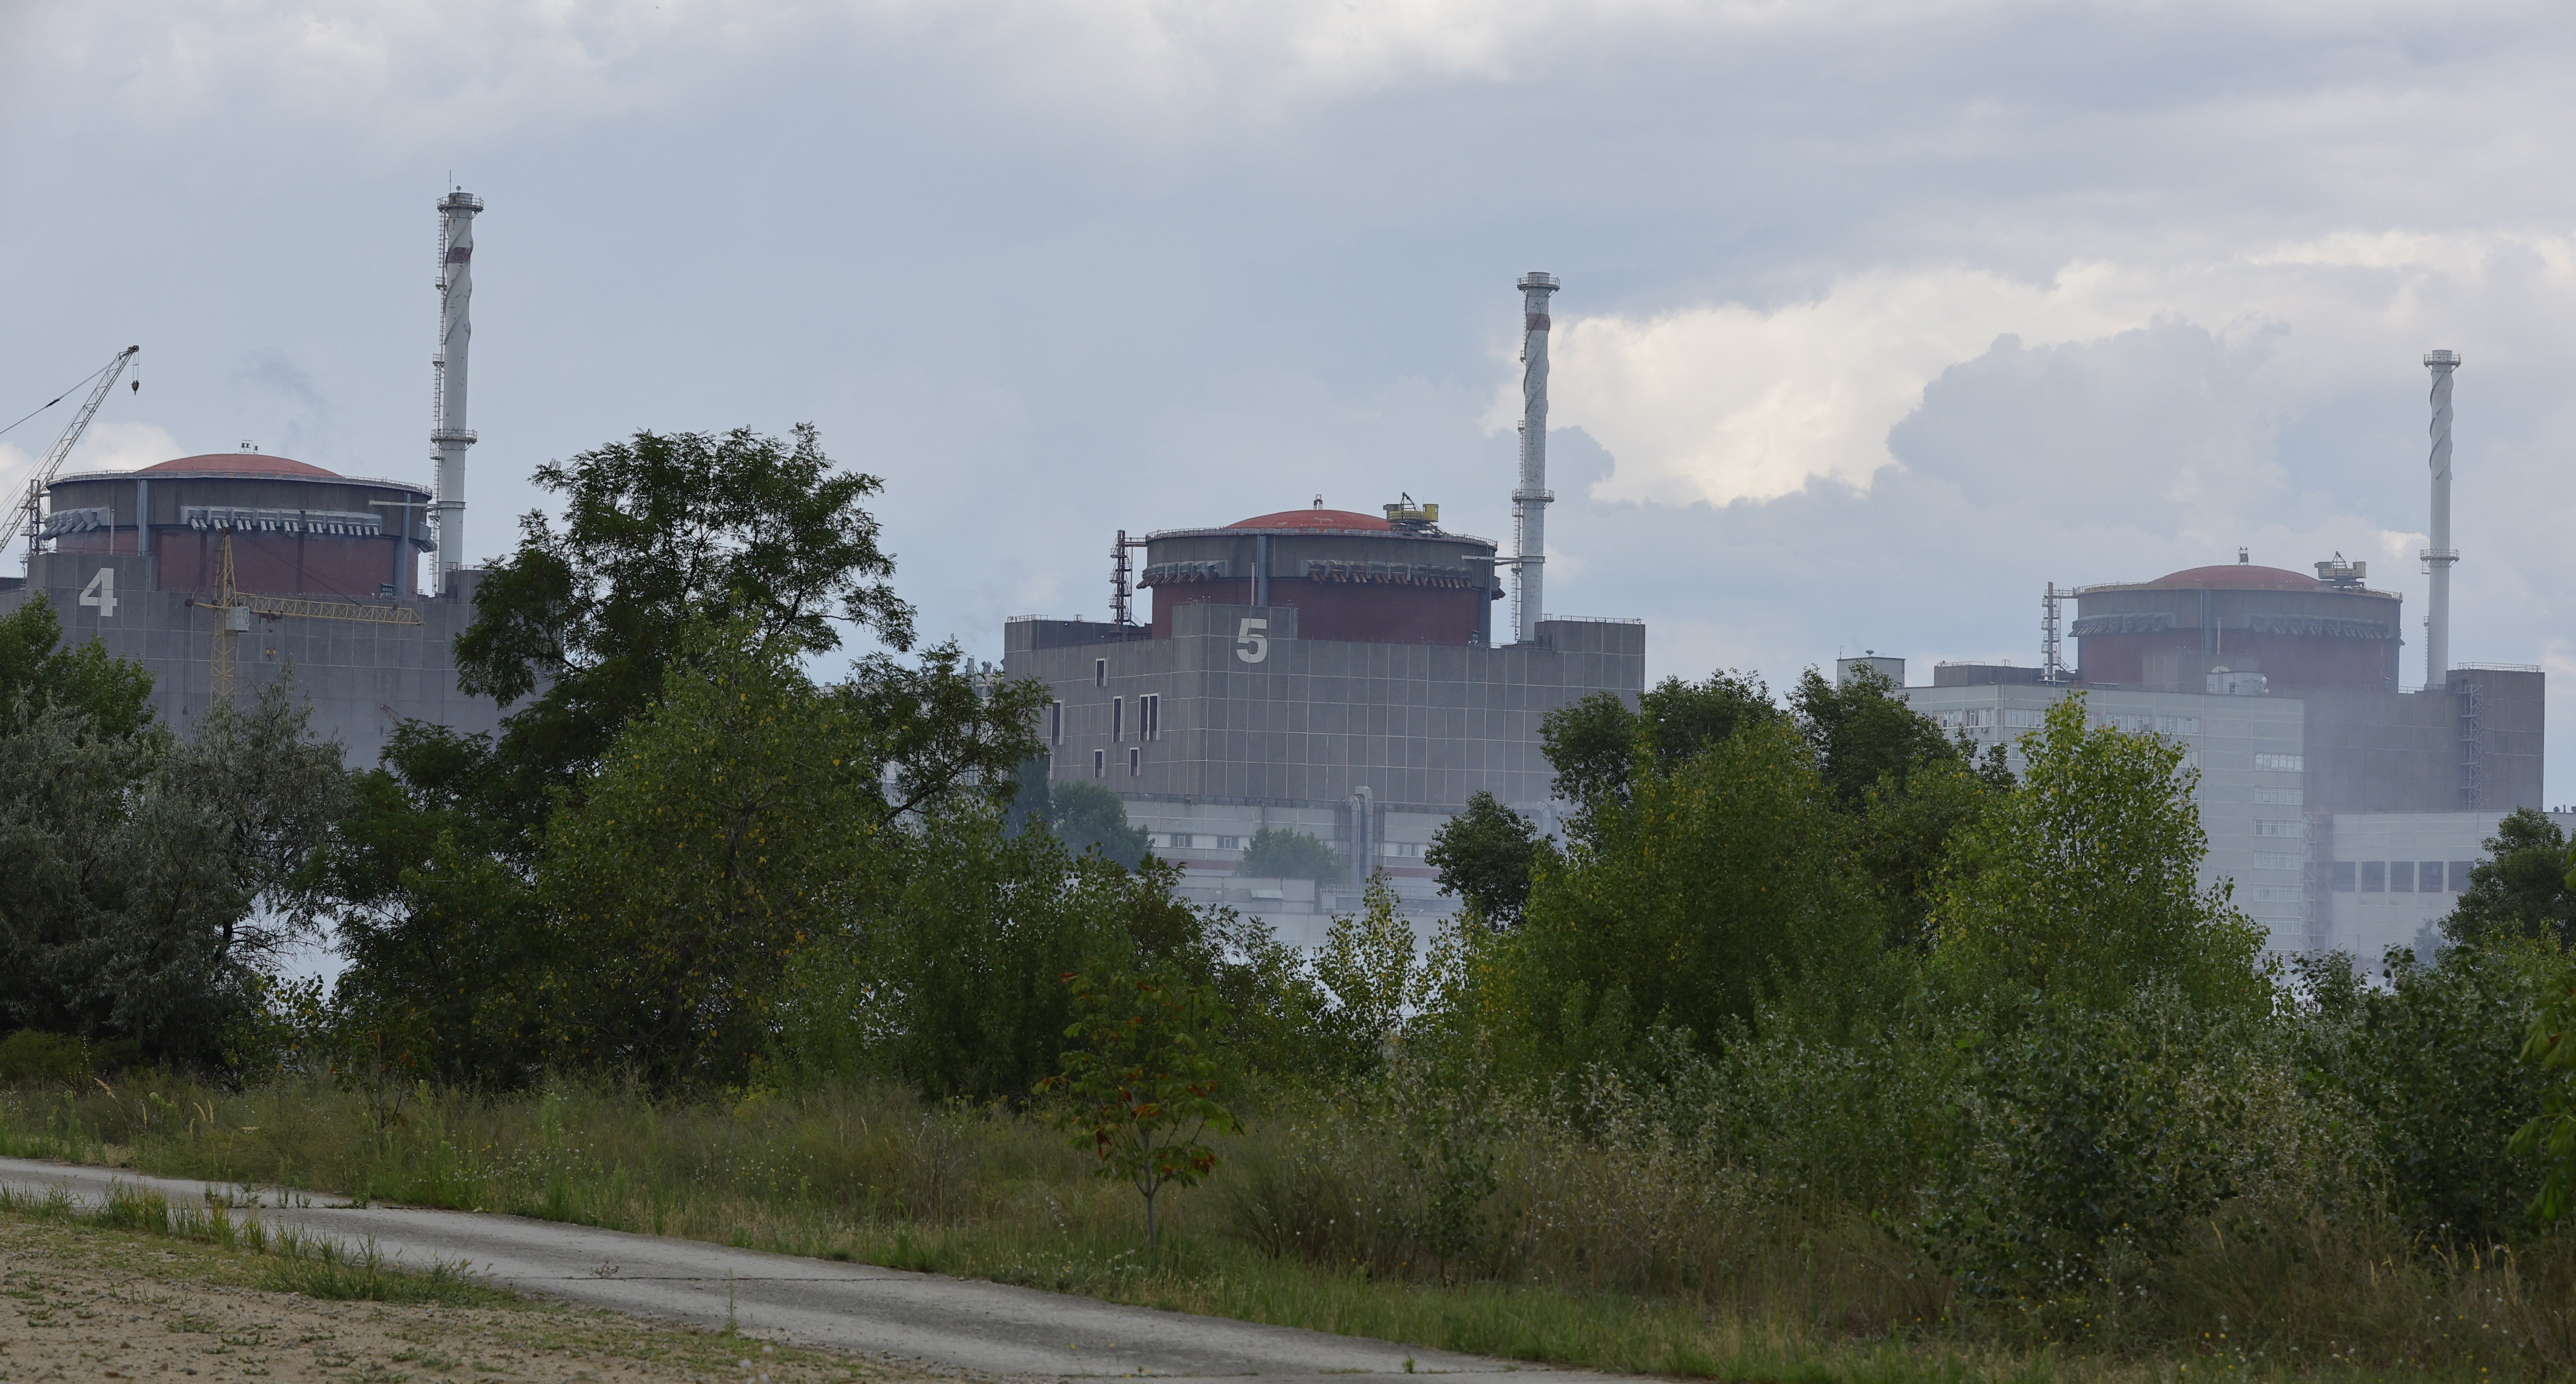 Vuelve la tensión militar en torno a la central nuclear de Zaporiyia ante la preocupación de la ONU